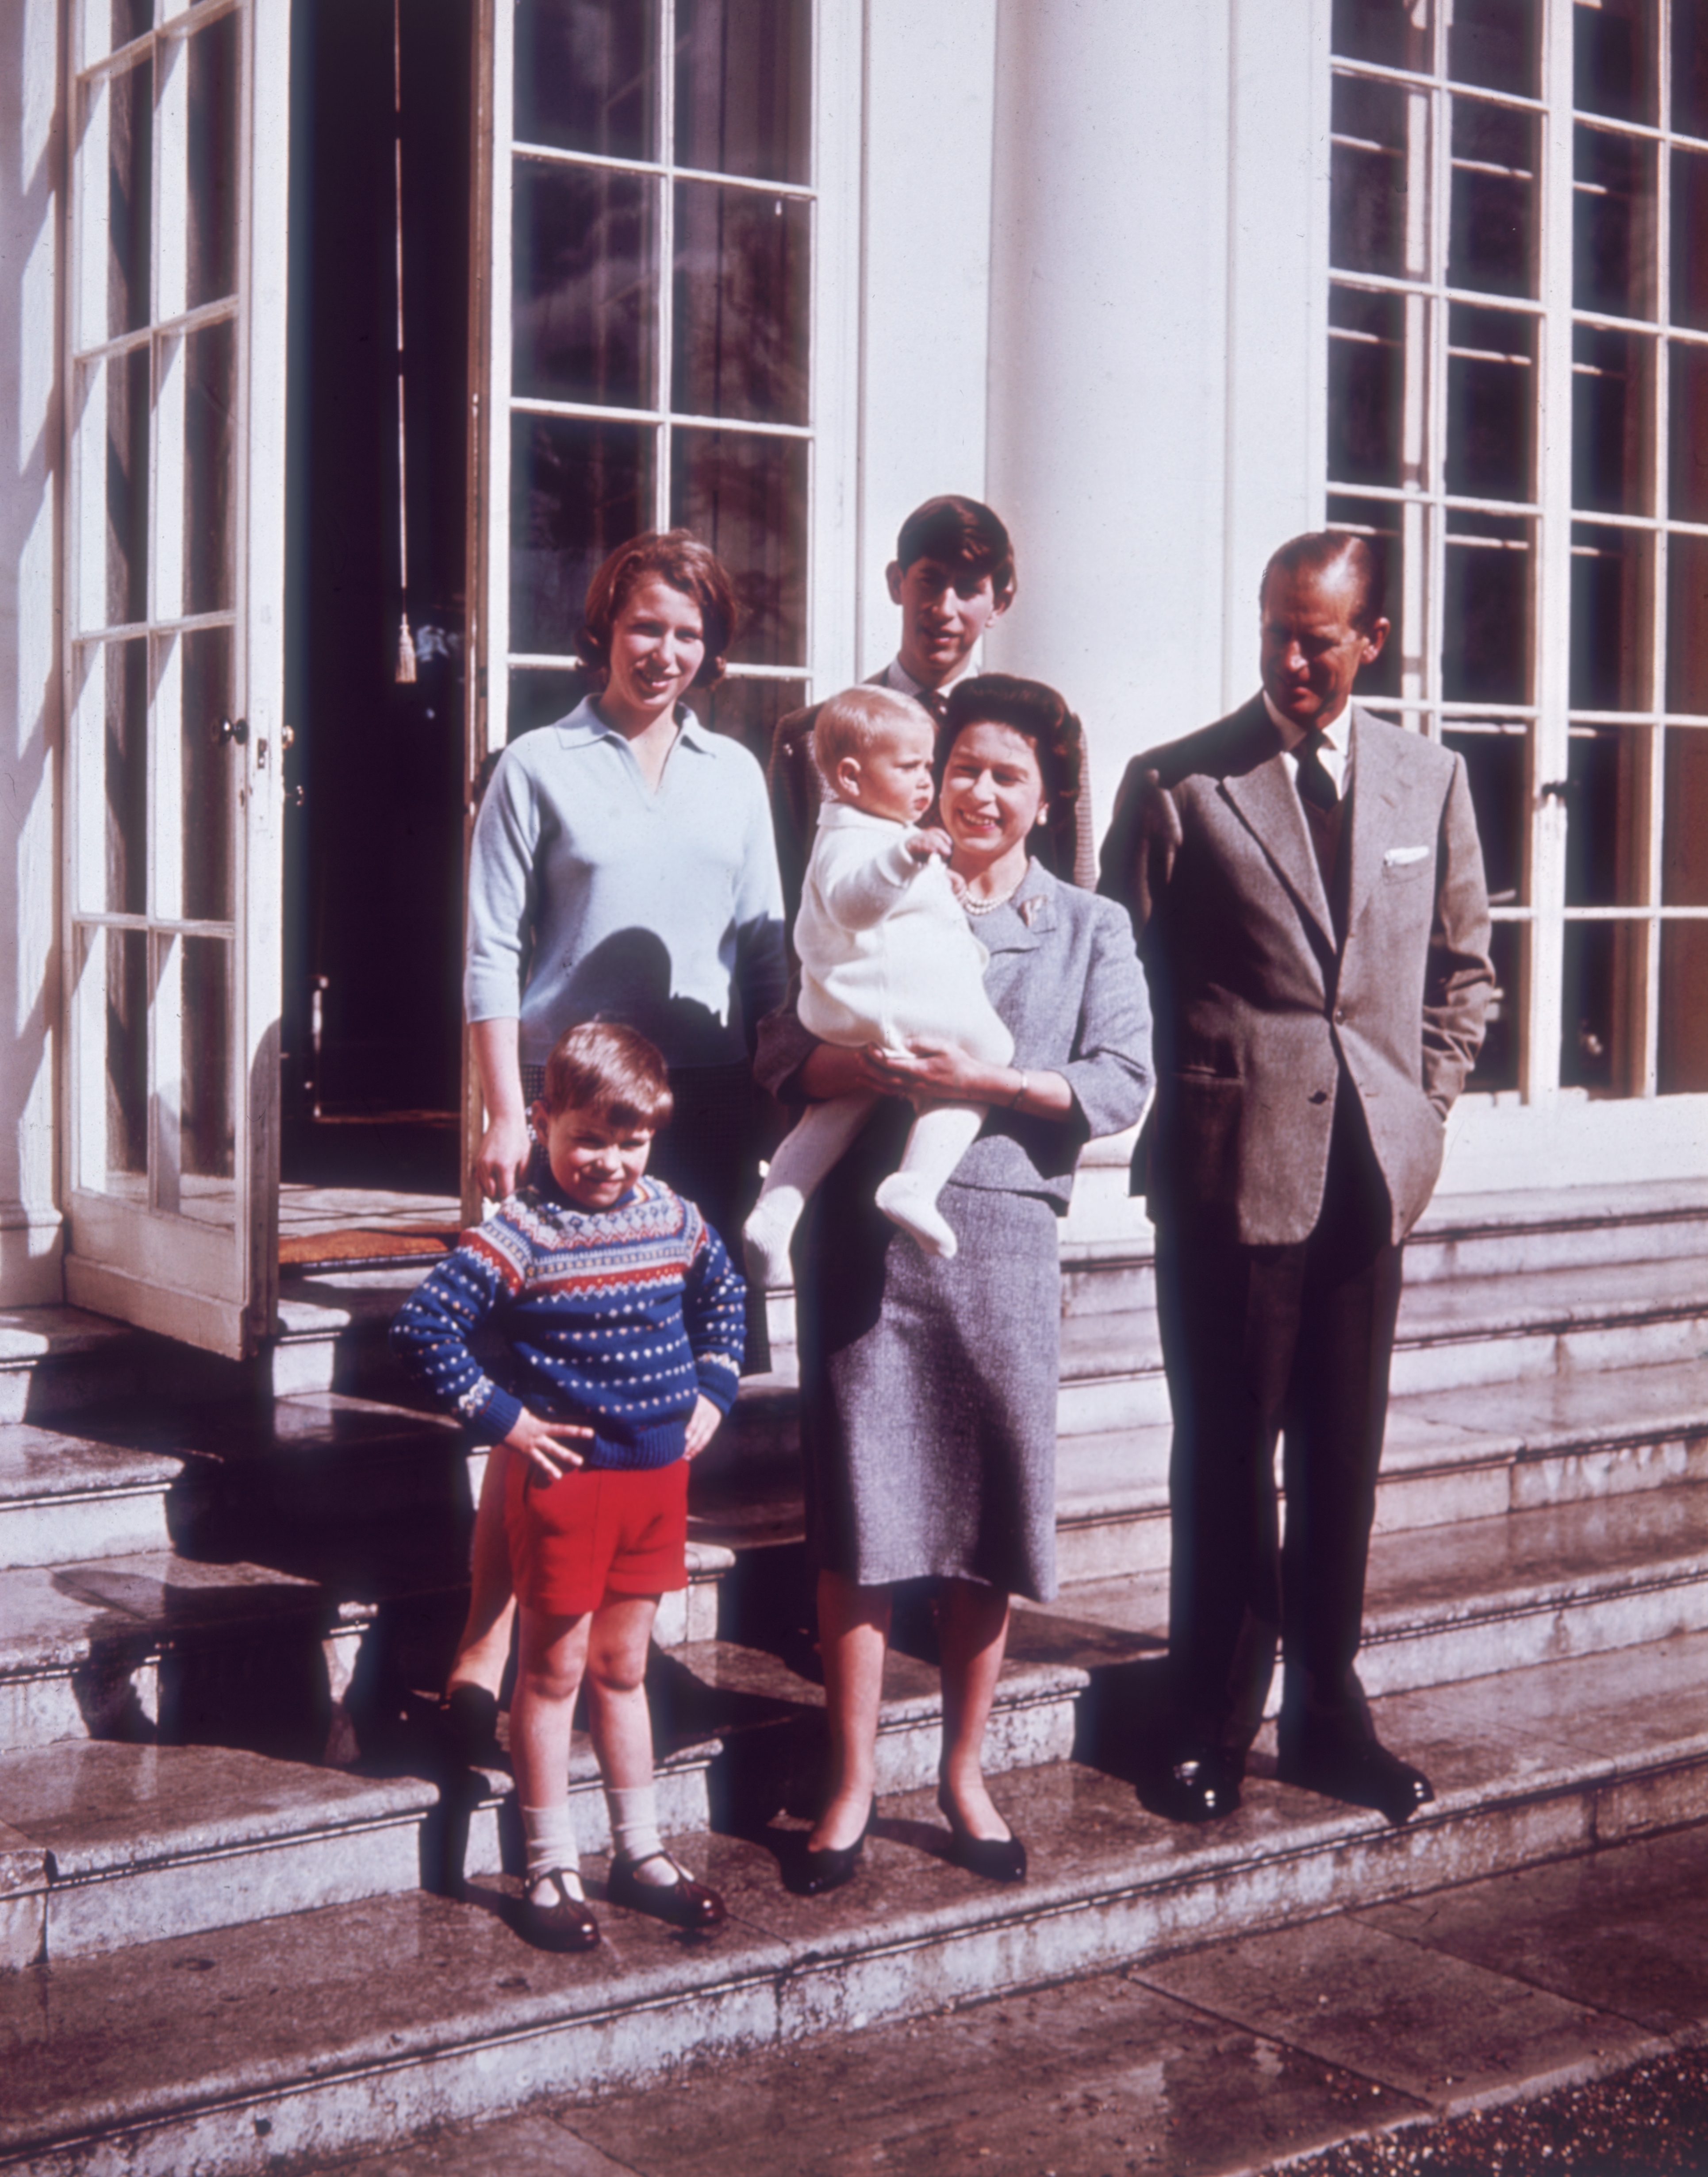 Edward est le plus jeune des quatre enfants de la reine et du prince Philip - photographié ici avec ses frères et sœurs aînés Charles, Andrew et Anne en 1965.